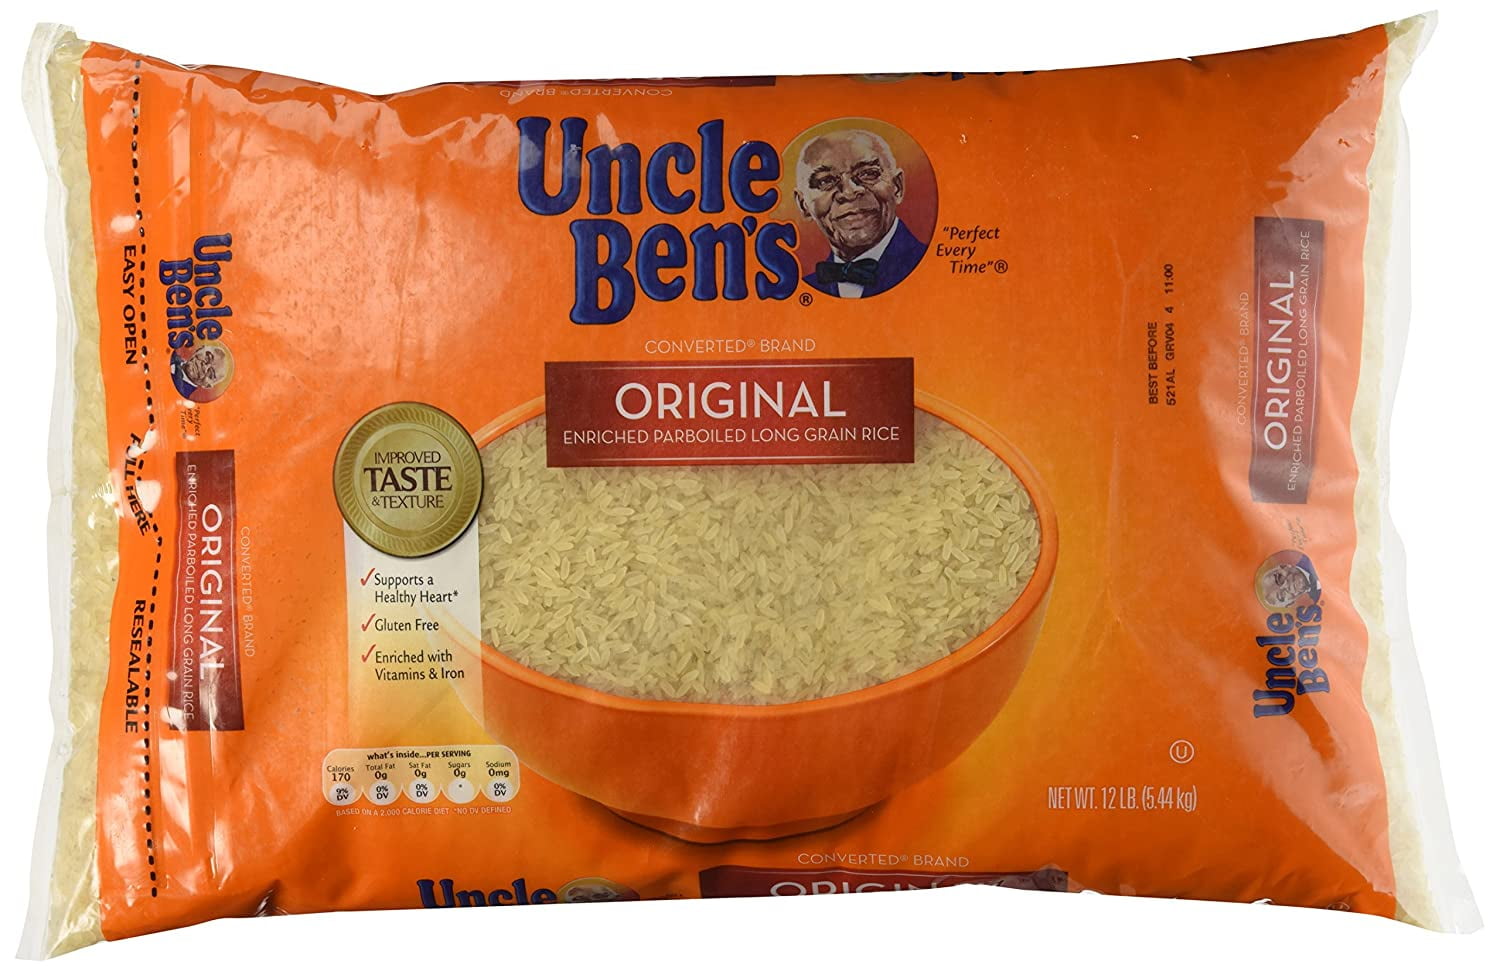 Uncle Ben's - Riz Long Grain 1kg (Sachet Cuisson - 5x200g) 08/11/25 -  Delices Market